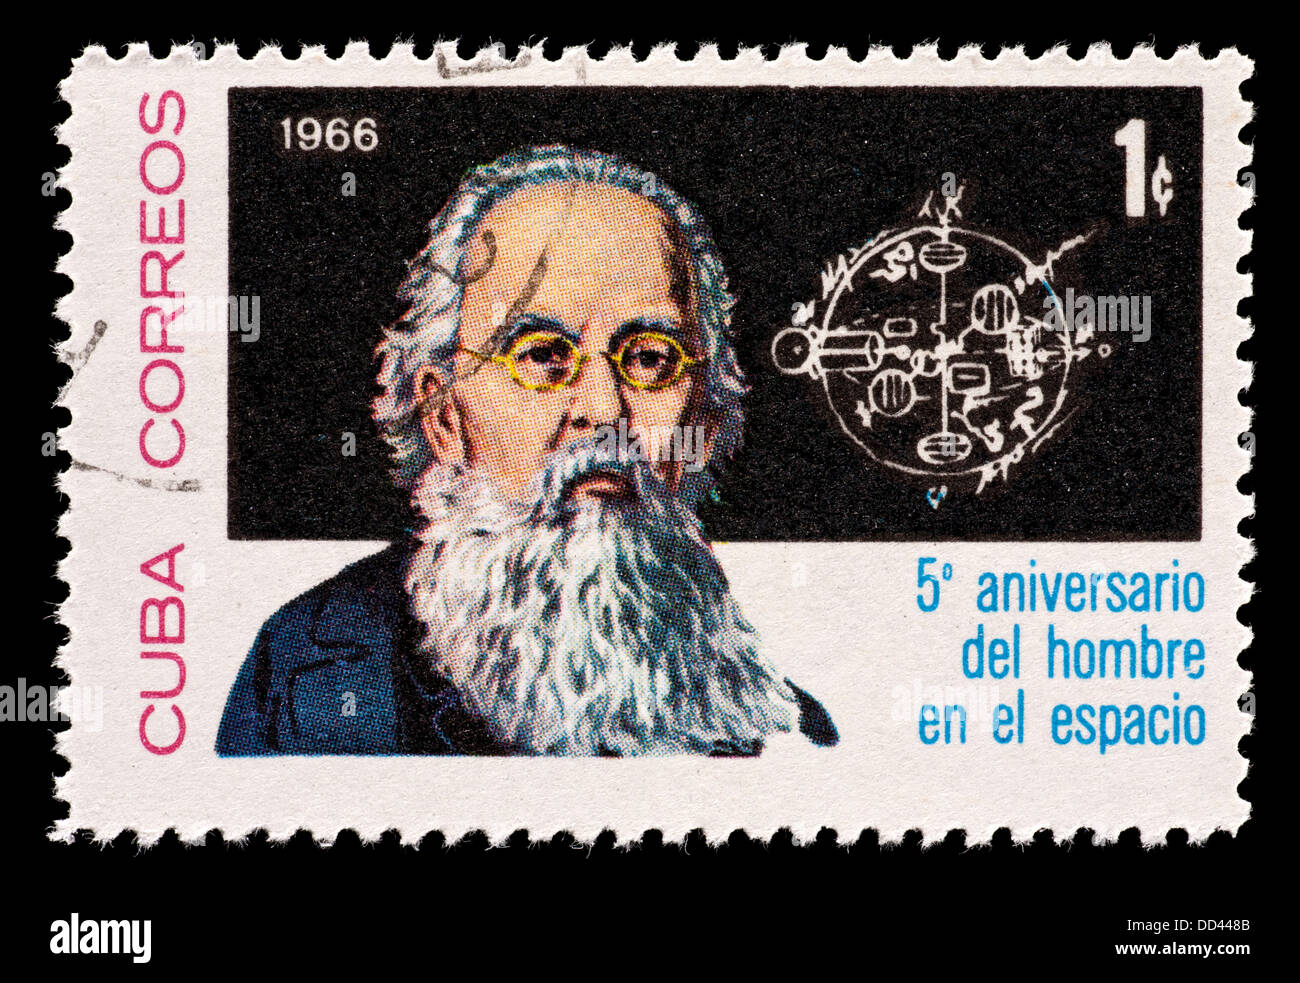 Timbre-poste représentant de Cuba Konstantin Eduardovich Tsiolkovsky, fusée soviétique et les sciences de l'espace scientifique. Banque D'Images